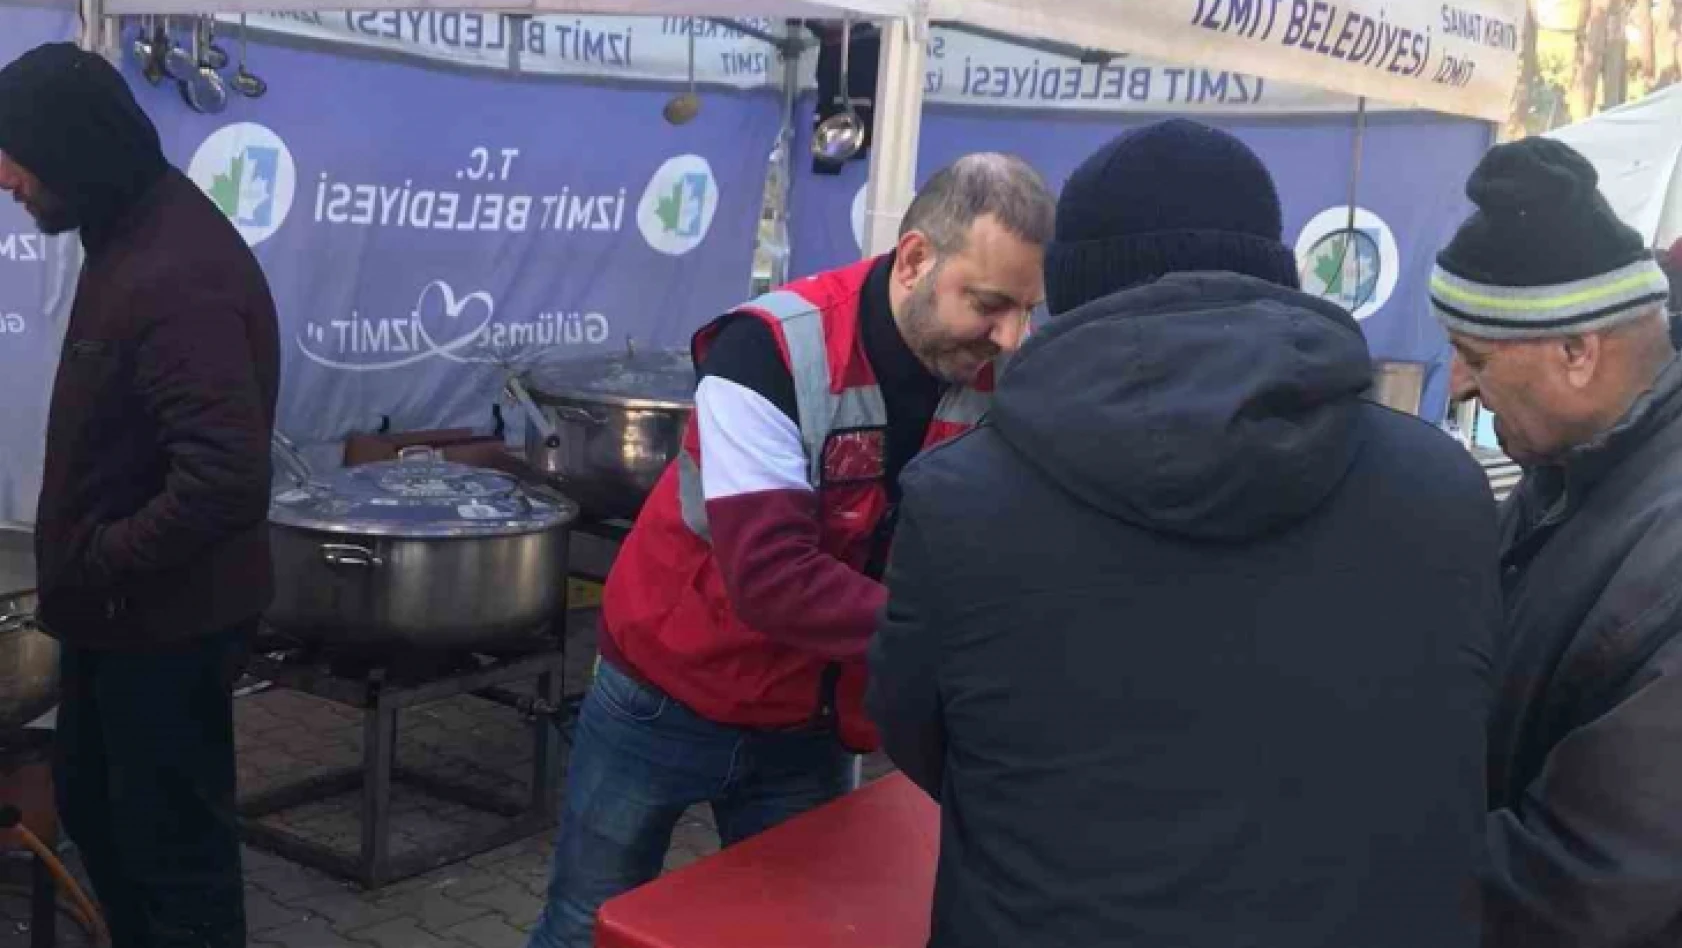 İzmit Belediyesi Aşevi, günde 7 bin kişiye sıcak yemek dağıtıyor